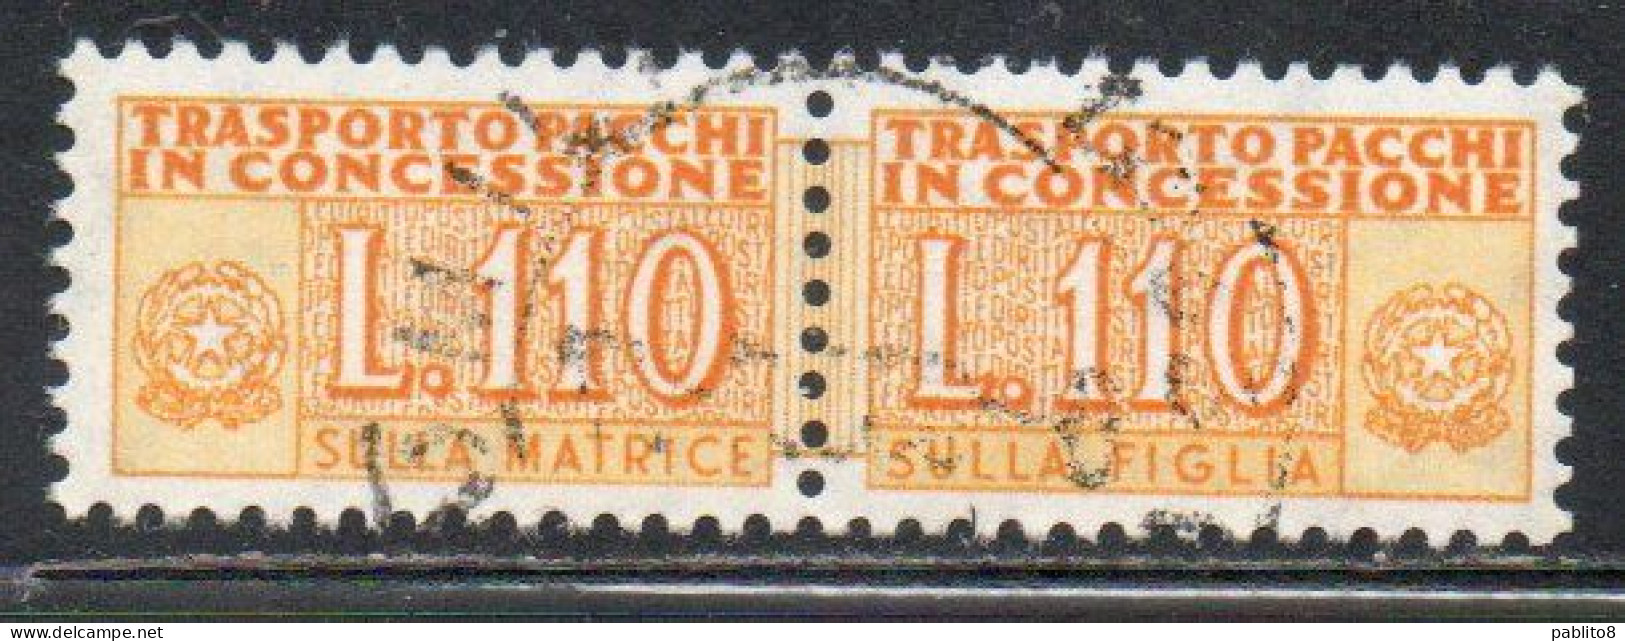 ITALIA REPUBBLICA ITALY REPUBLIC 1955 1981 PACCHI IN CONCESSIONE PARCEL POST STELLE STARS 1960 LIRE 110 USATO USED OBLIT - Pacchi In Concessione